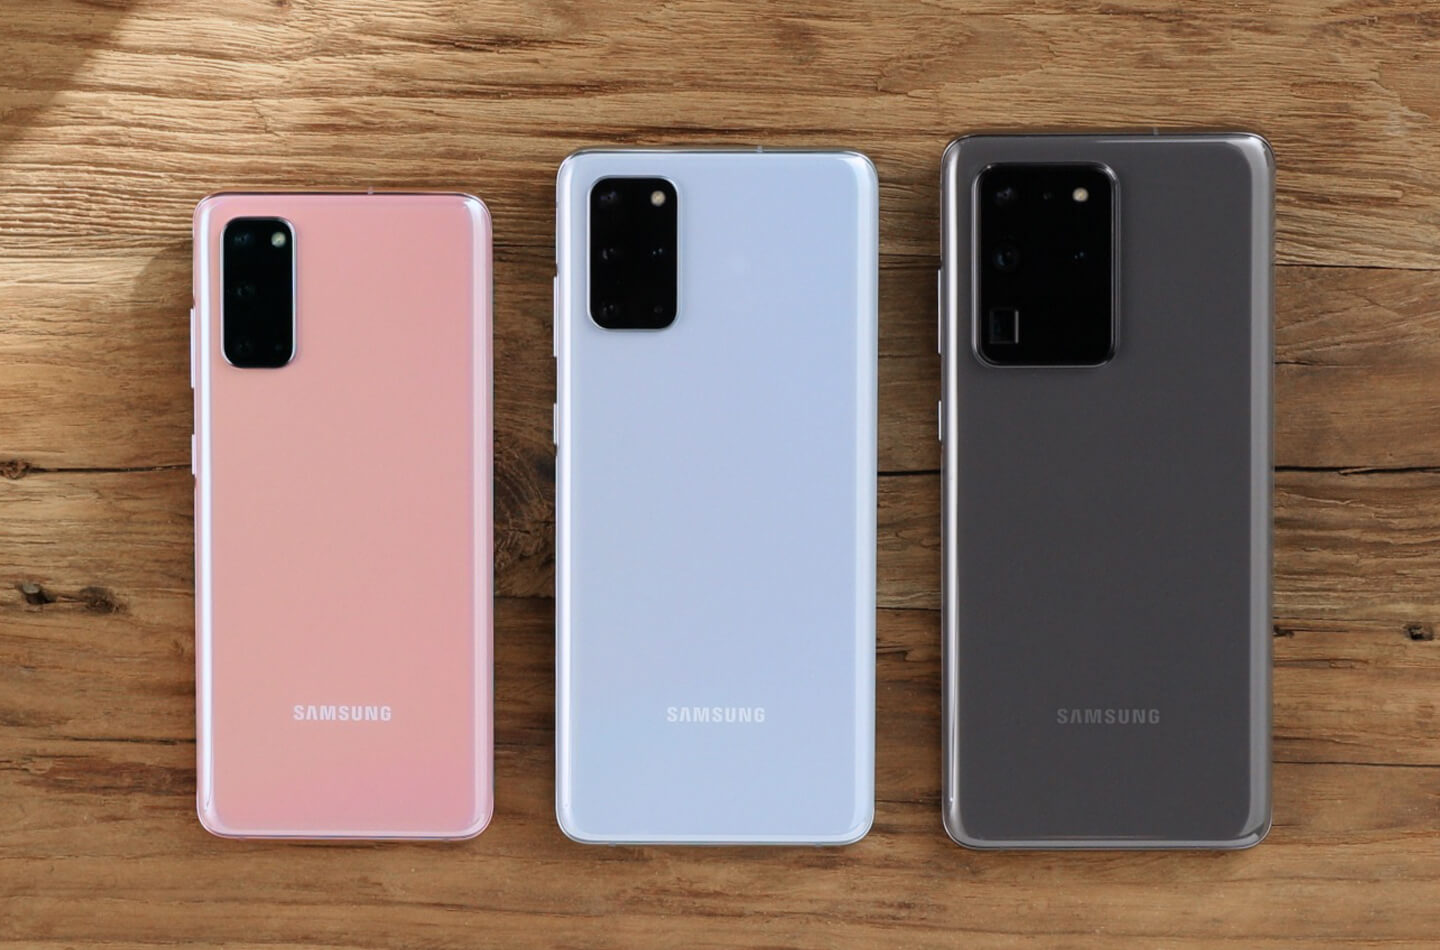 Samsung Galaxy S20 Ultra come funziona lo zoom 100x?